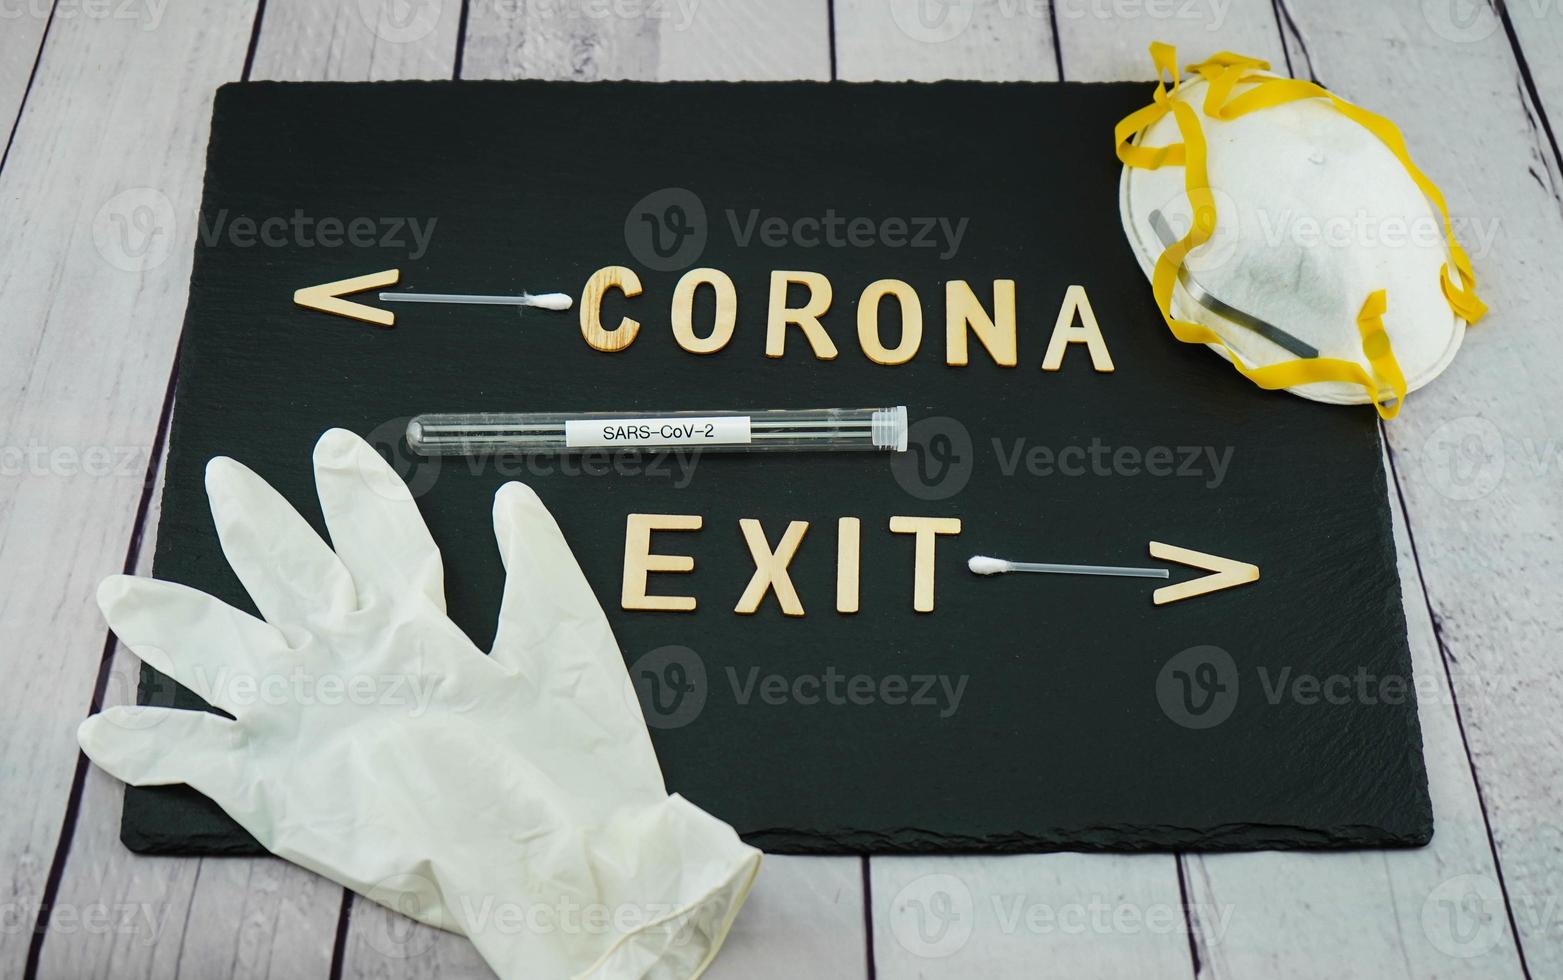 corona virus een wereldwijde pandemische ziekte foto